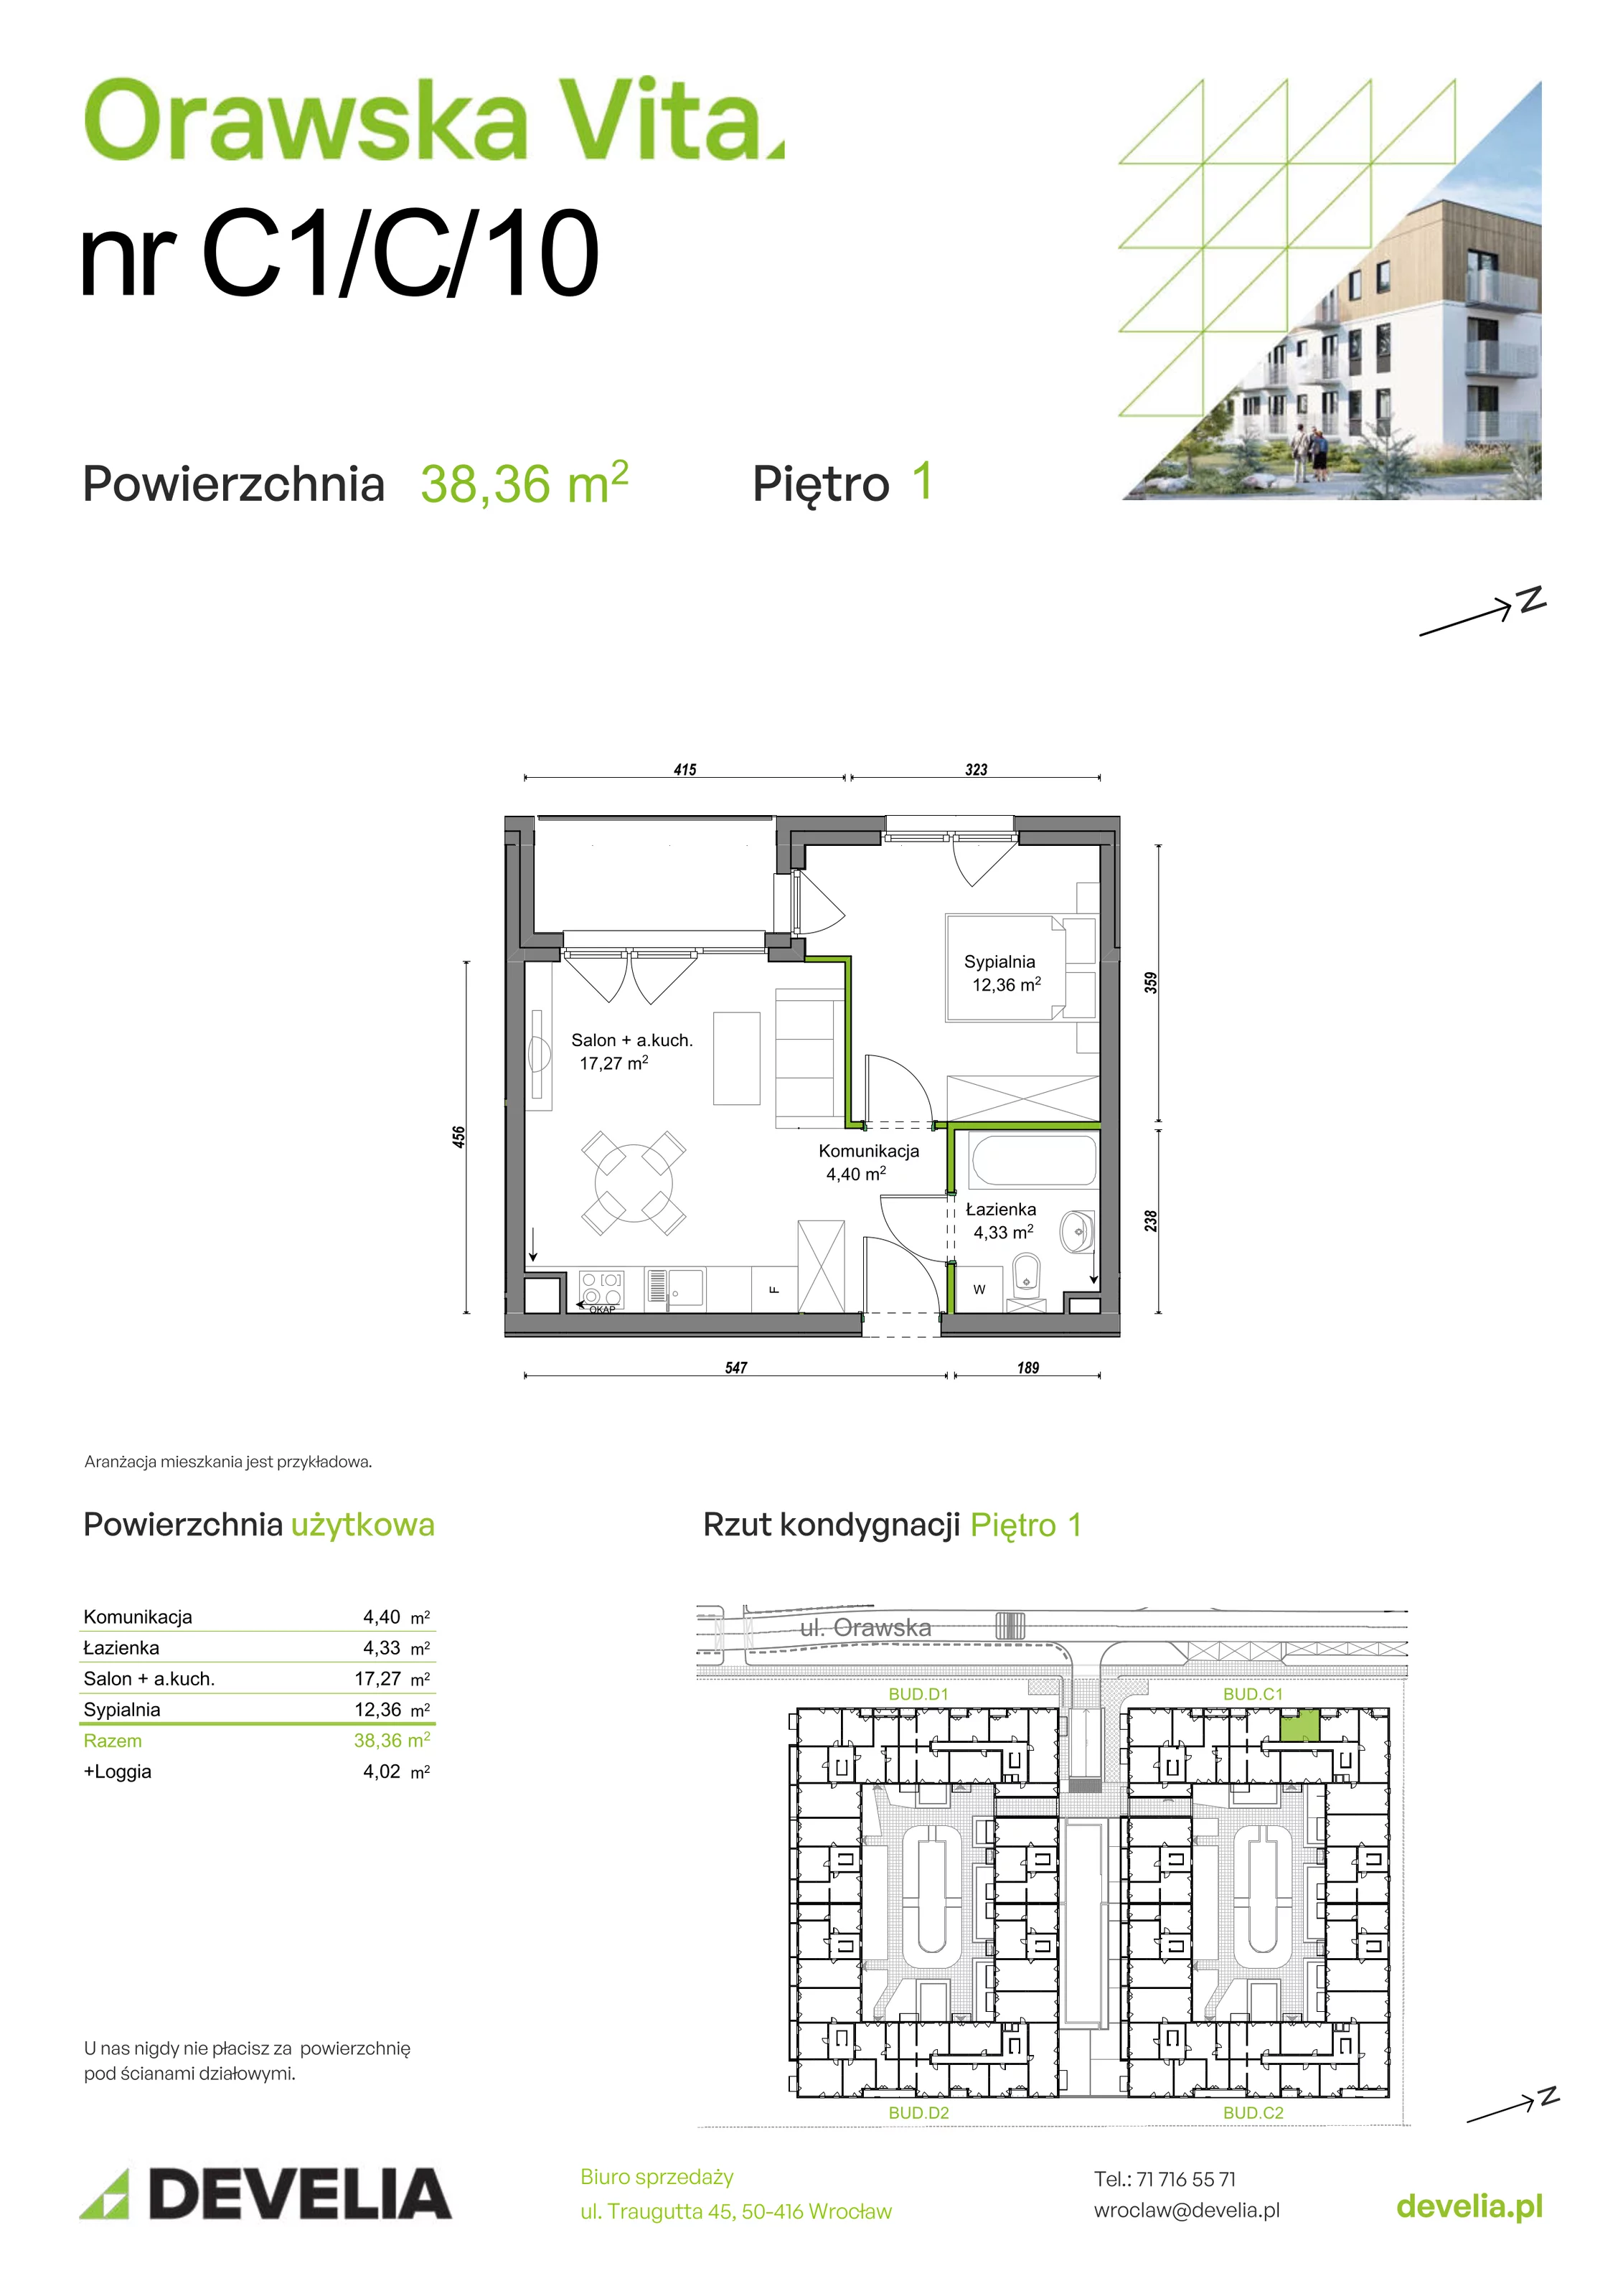 Mieszkanie 38,36 m², piętro 1, oferta nr C1/C/10, Orawska Vita, Wrocław, Ołtaszyn, Krzyki, ul. Orawska 73